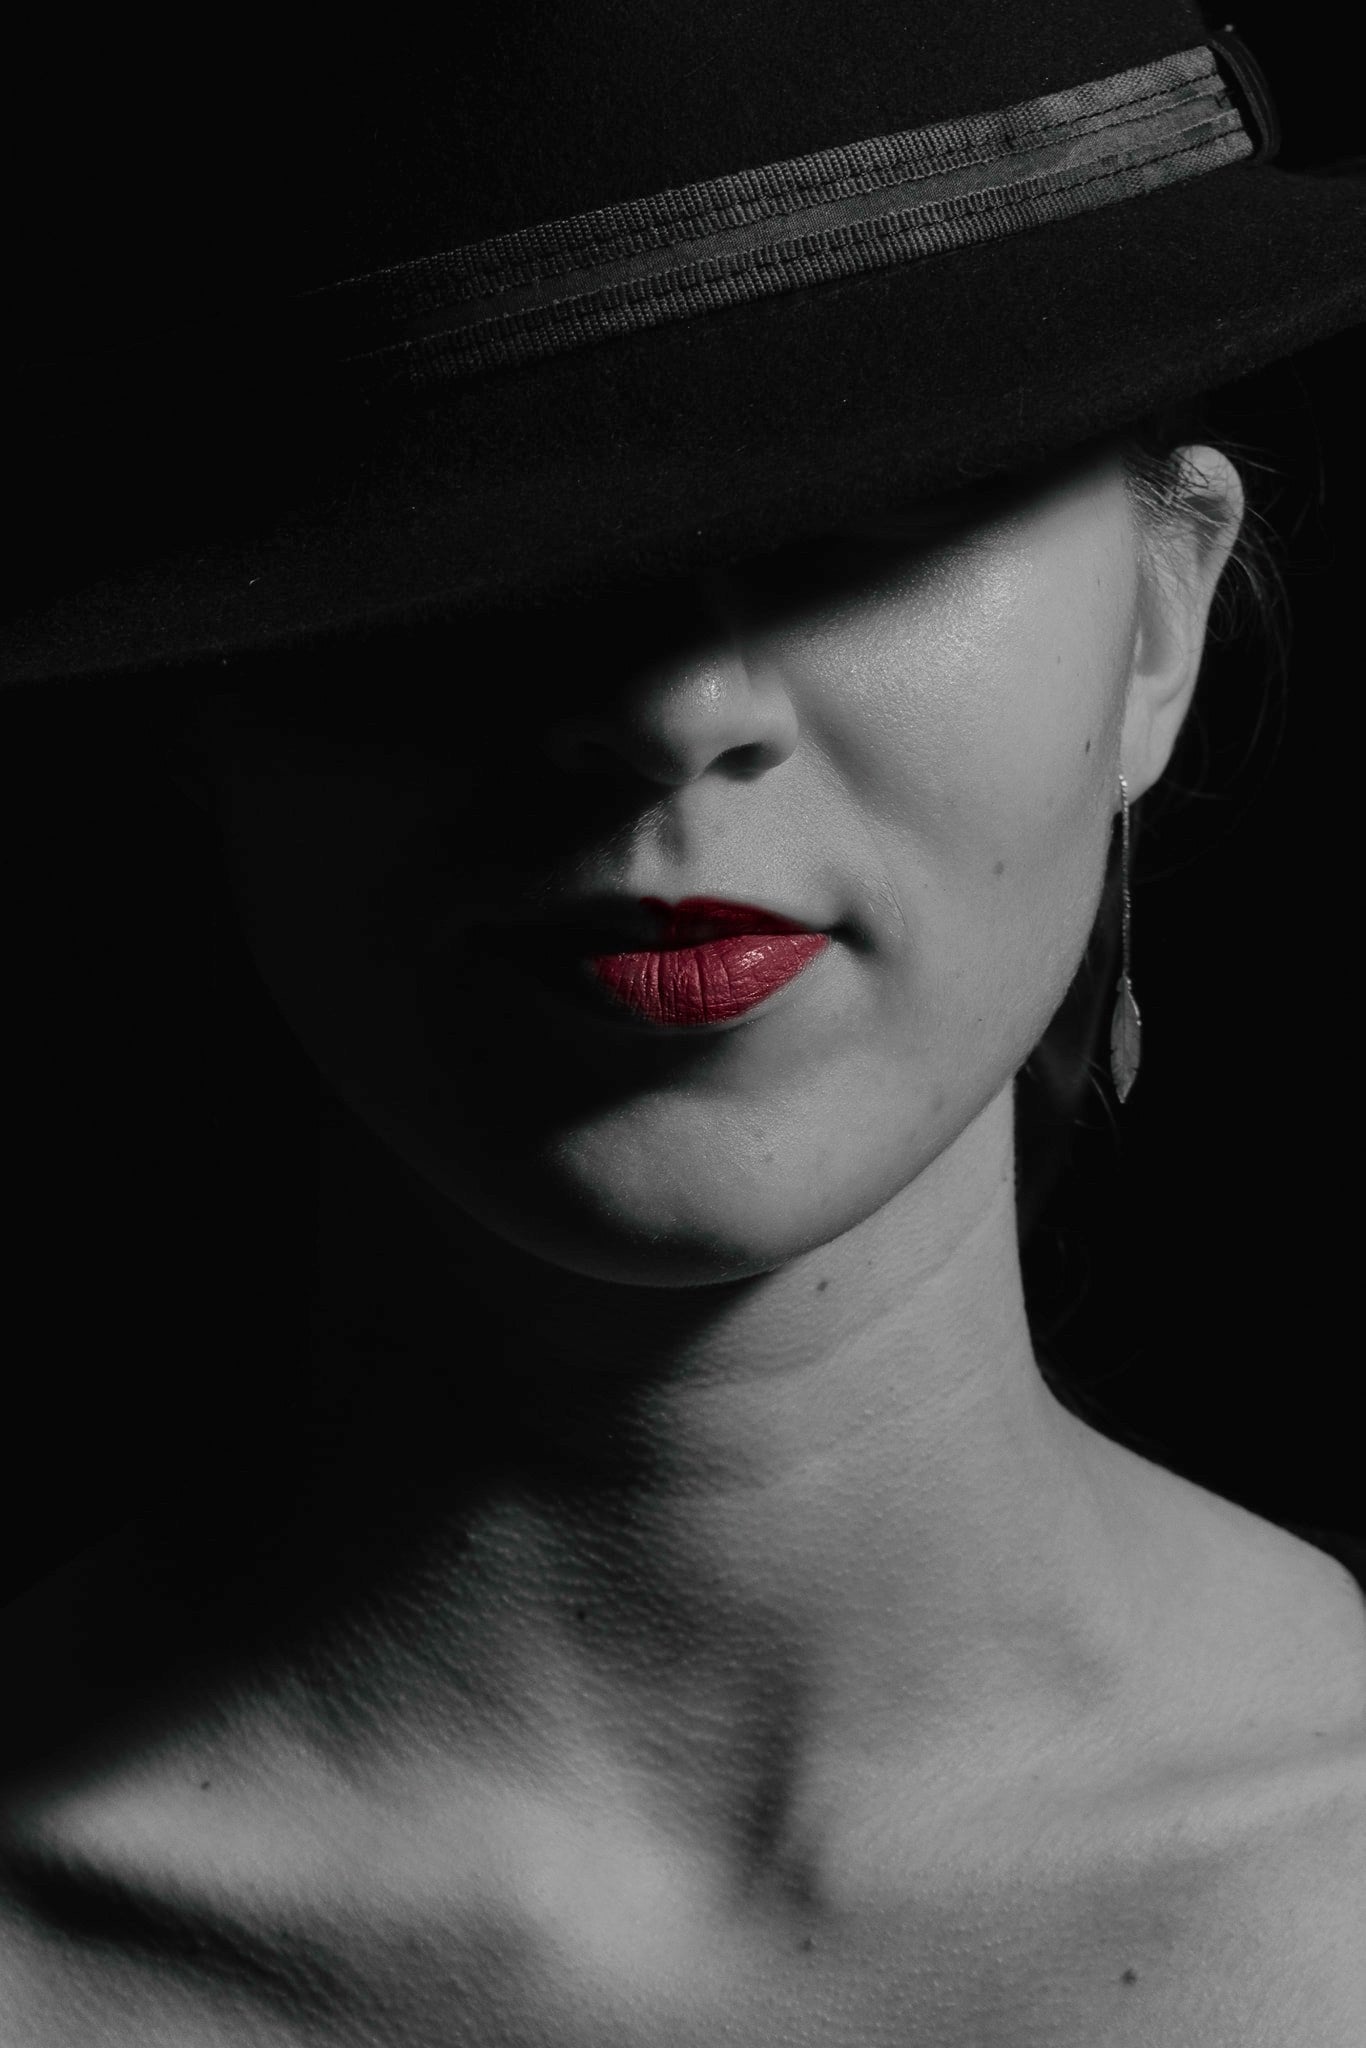 Studio fotografie model in zwart wit met rode lippen tijdens fotografie cursus portretten